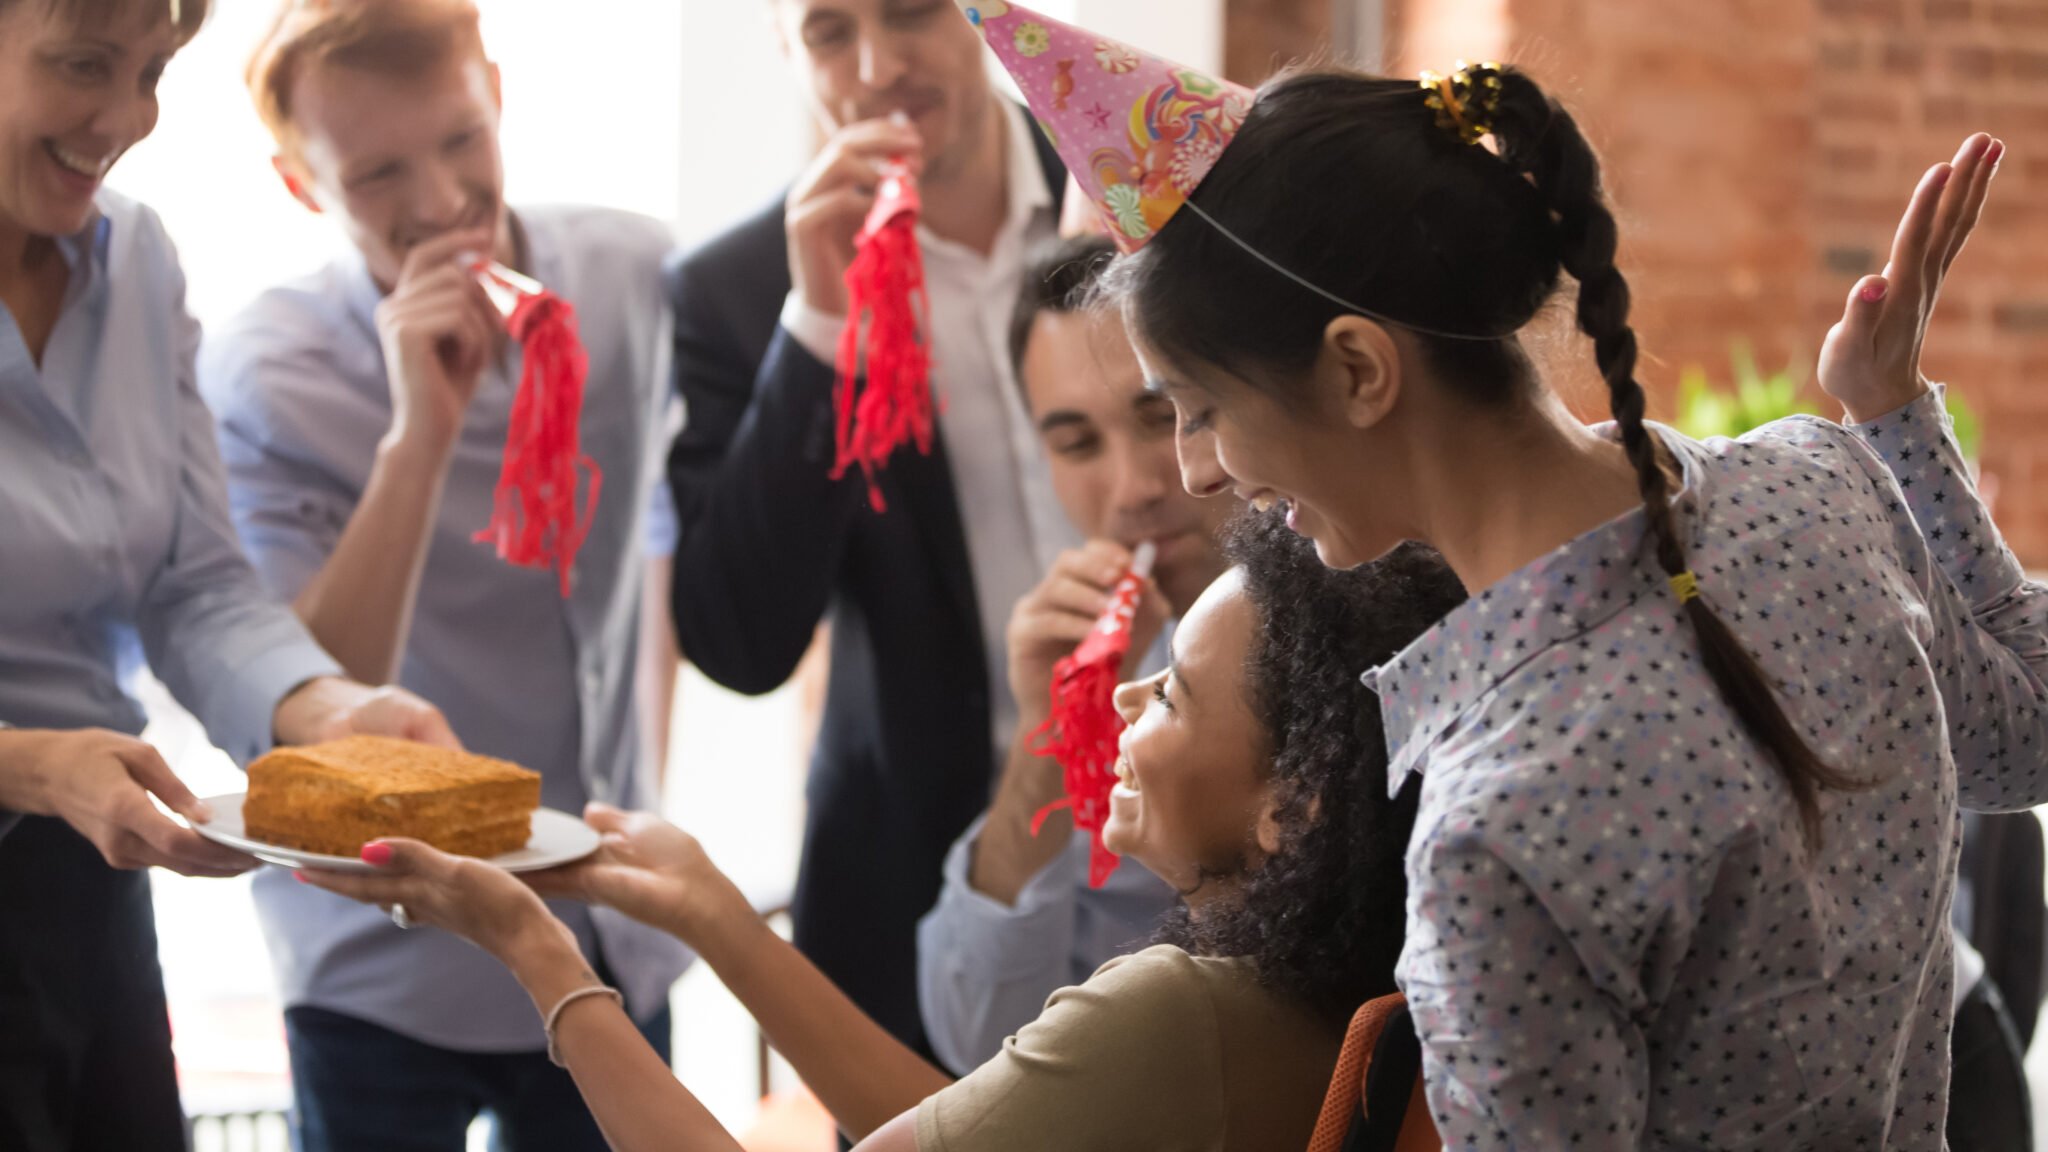 Geburtstag im Business: richtig Feiern mit Kollegen und Geschäftspartnern